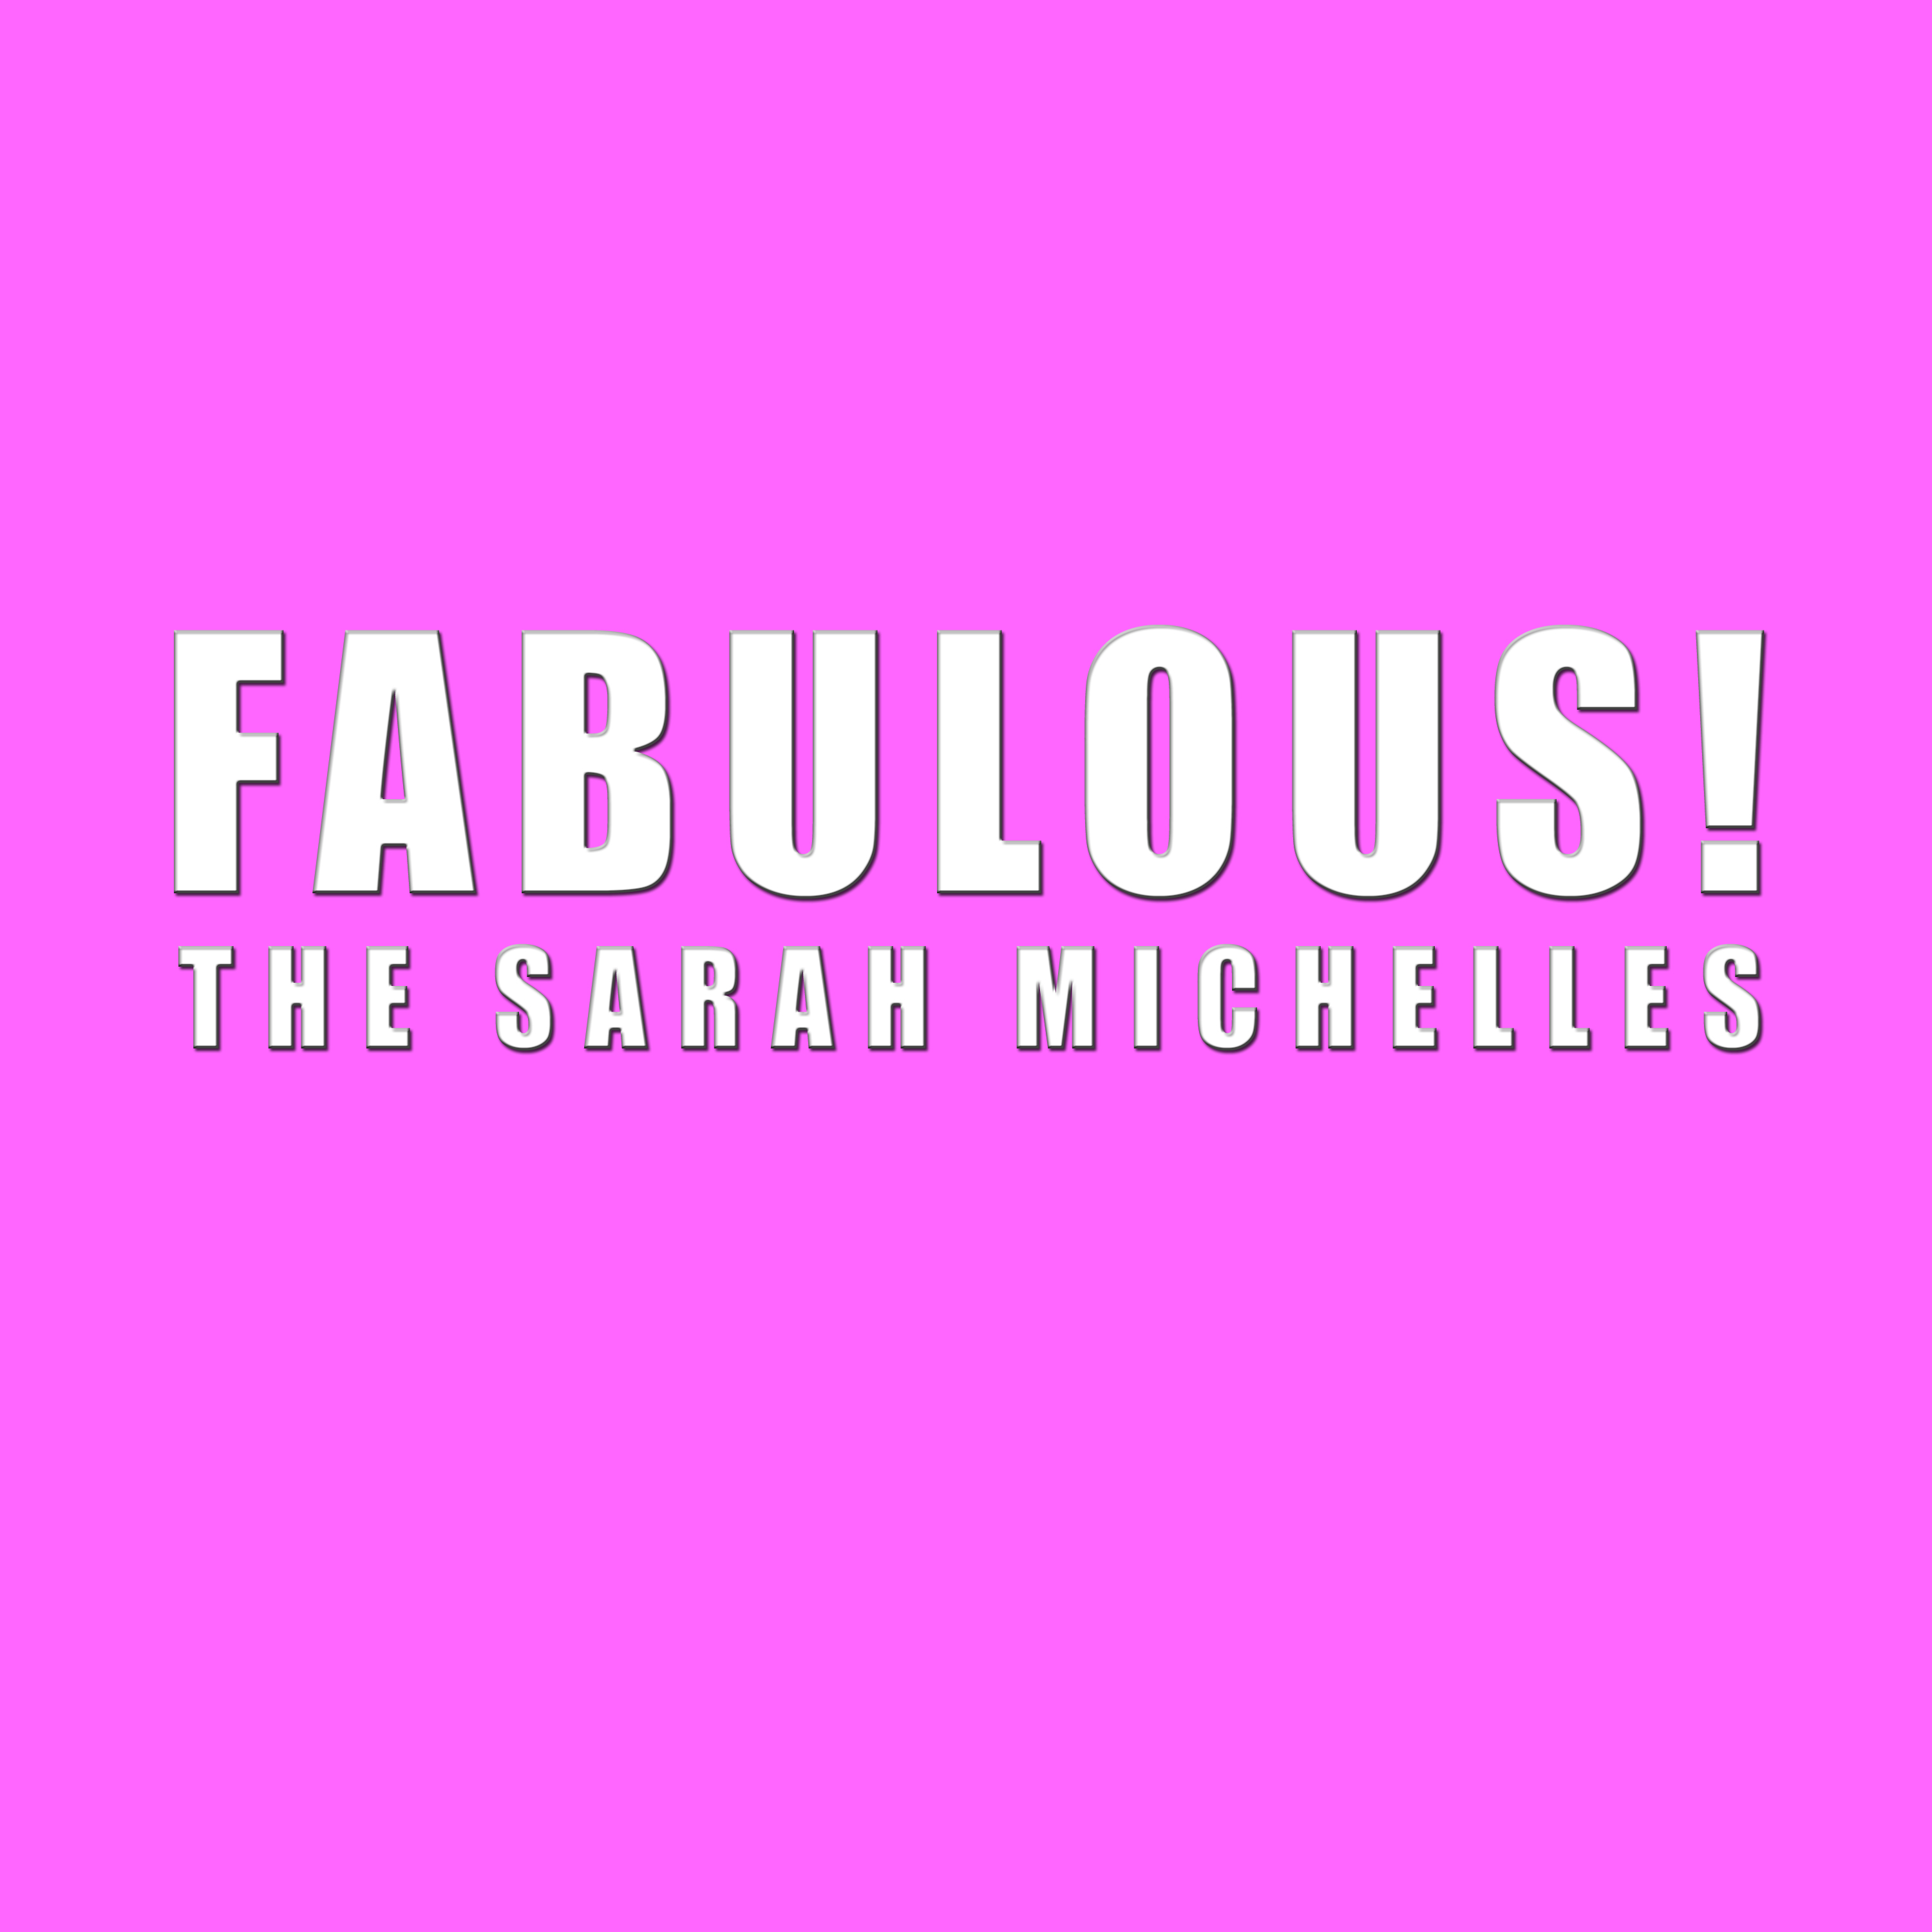 The Sarah Michelles - Fabulous!